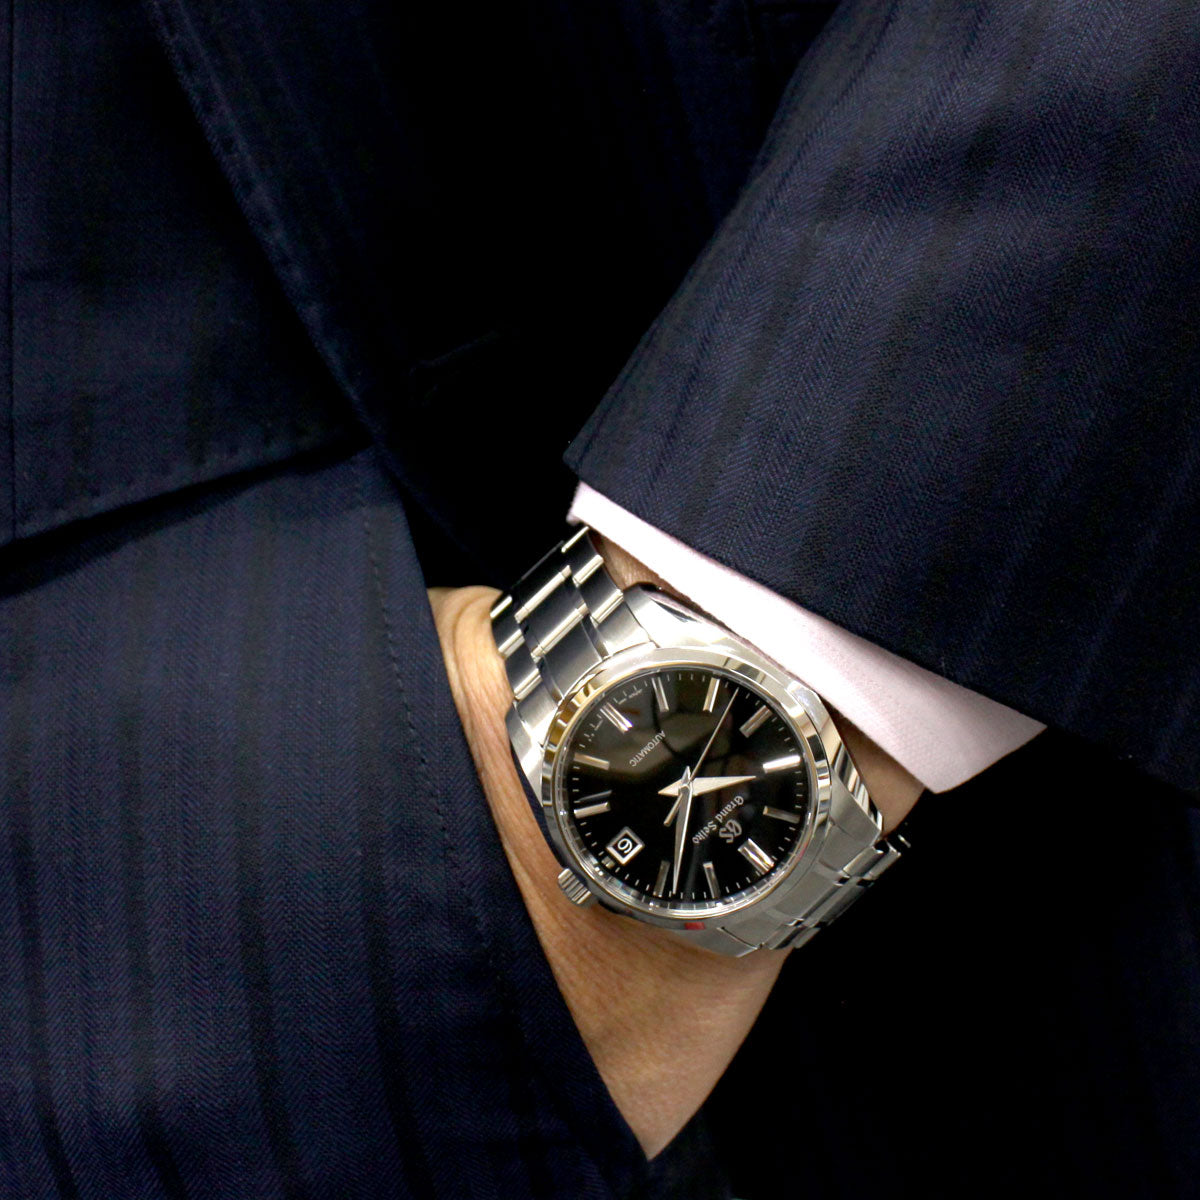 【36回分割手数料無料！】グランドセイコー GRAND SEIKO メカニカル 自動巻き 腕時計 メンズ SBGR317【正規品】